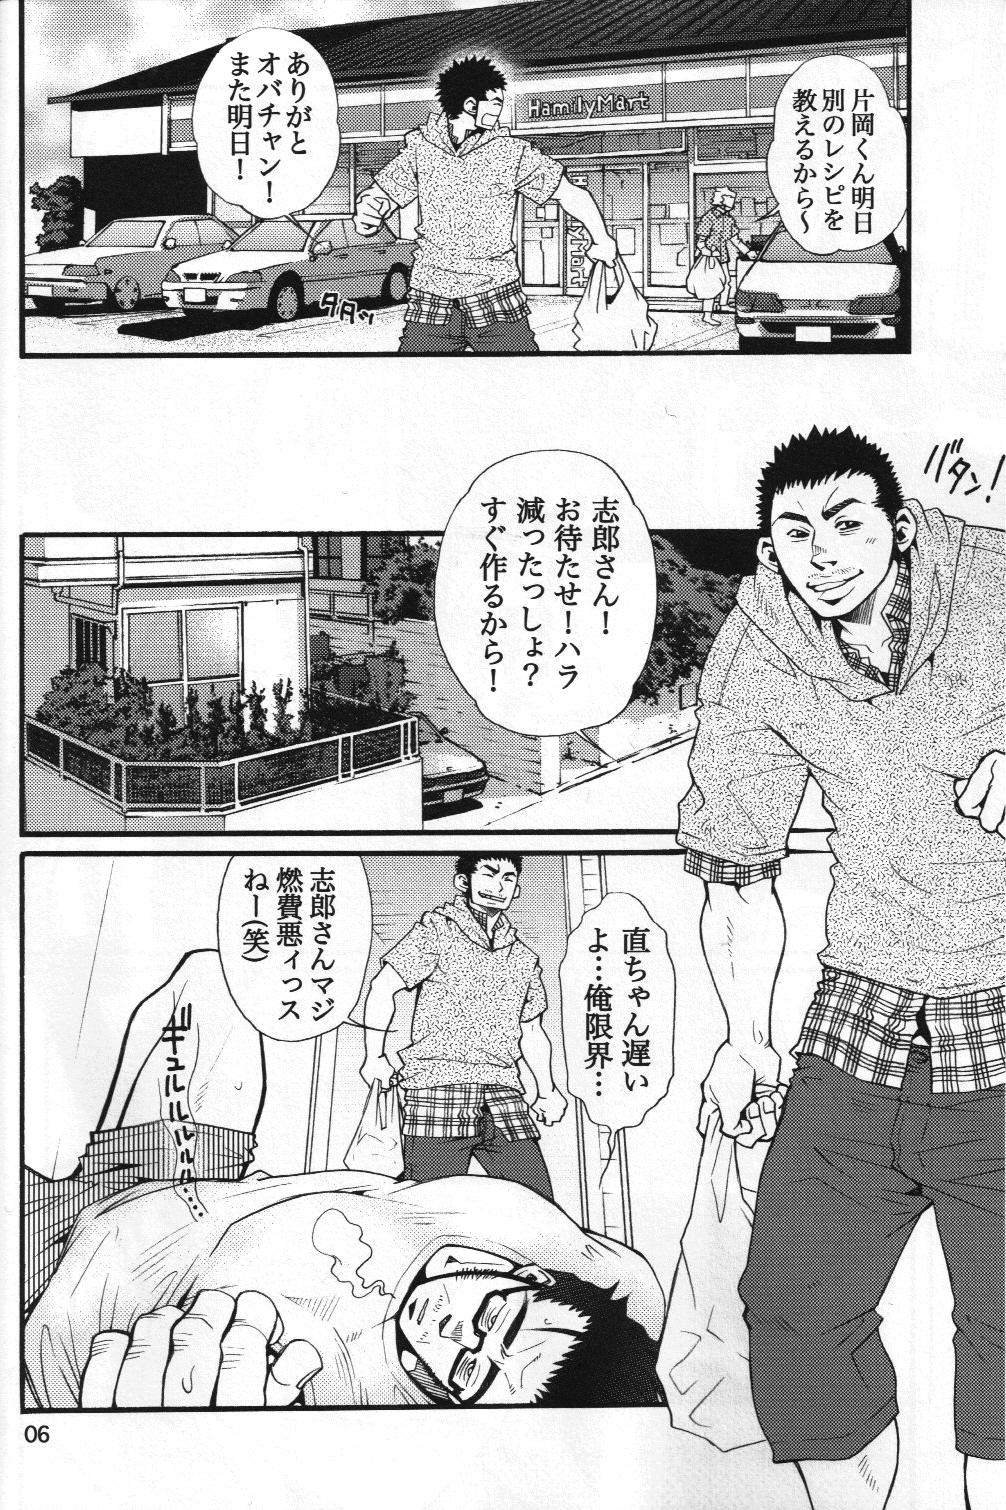 Masterbation 男子★ごはん - Takeshi Matsu & Matsuzaki Tsukasa Novinho - Page 4